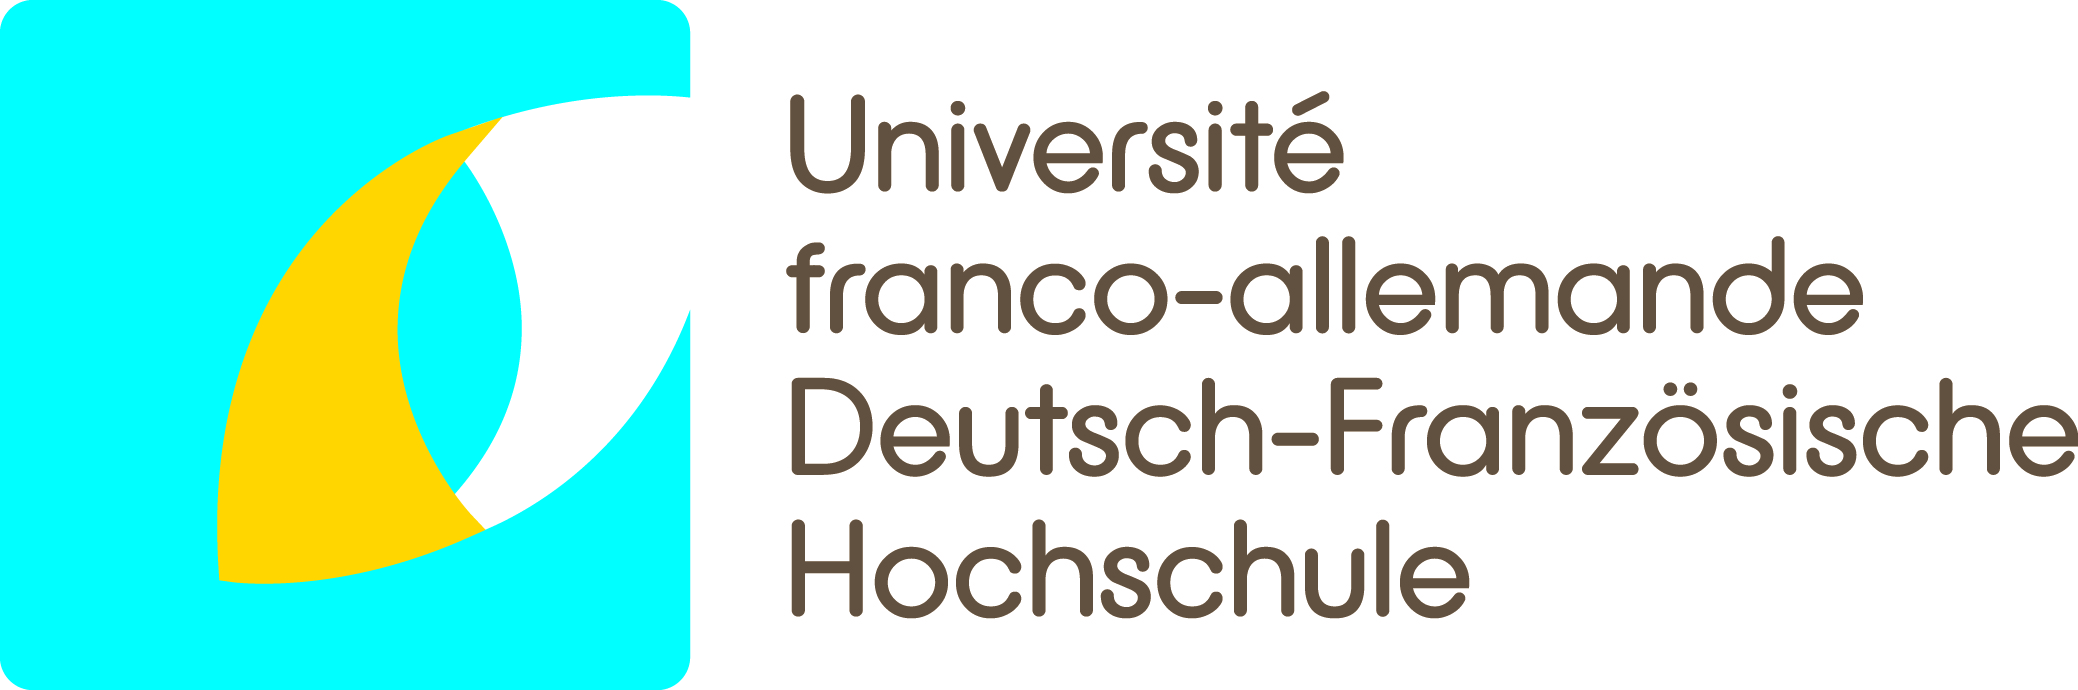 Logo: Deutsch-Französische Hochschule / Université franco-allemande / Franco-German University